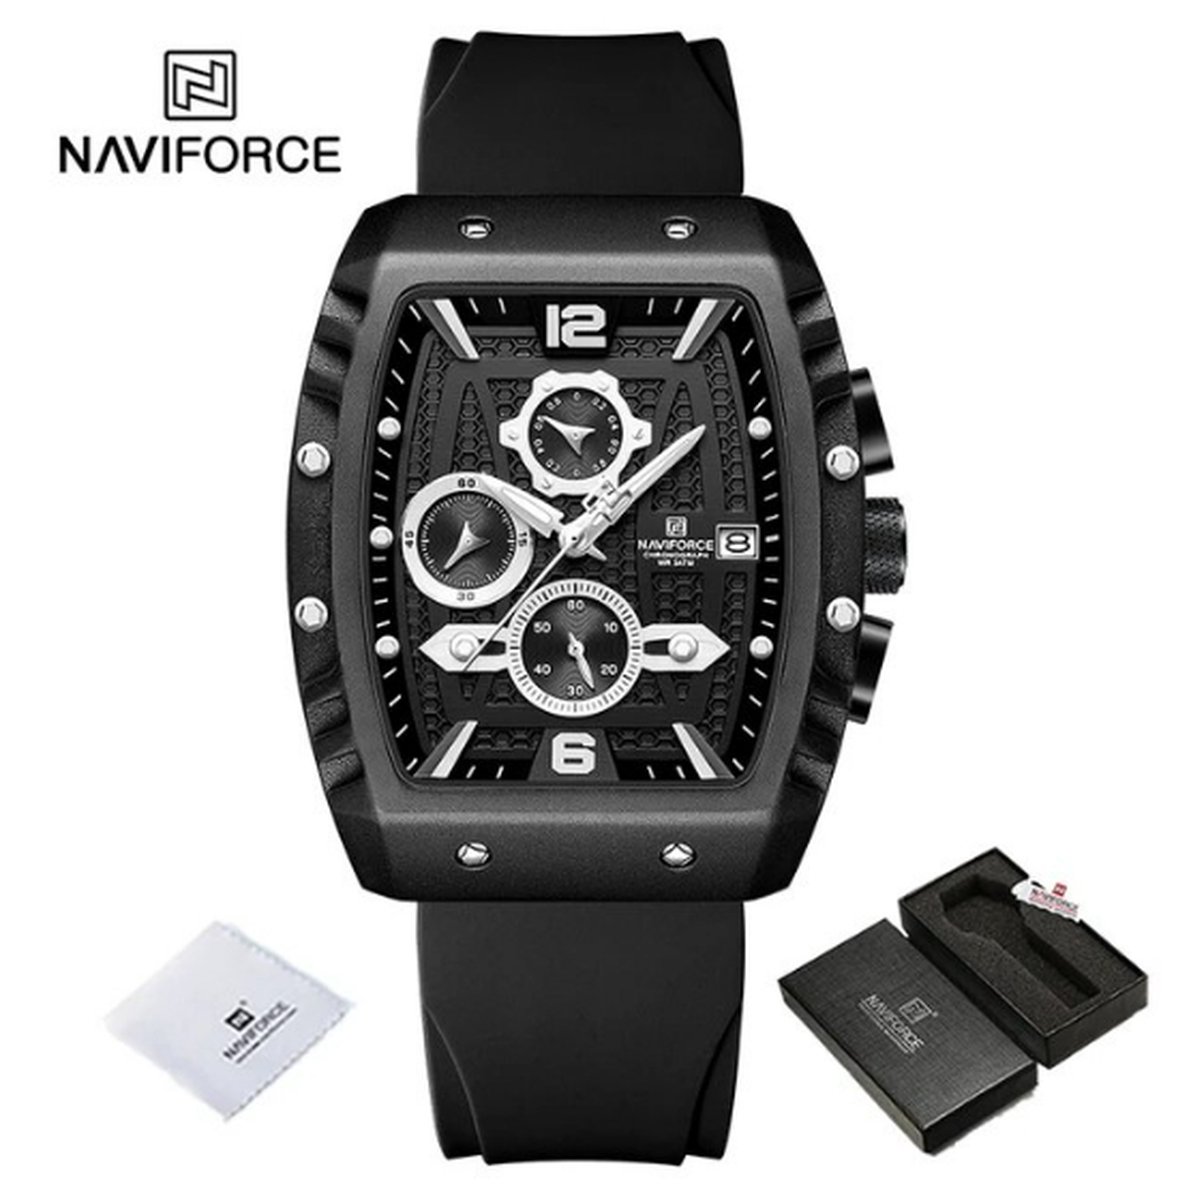 NAVIFORCE 8025 Horloge voor mannen - Zwart - Siliconen Band - Verpakt in mooie geschenkdoos - Zwarte uurwerkkast - Batterij inclusief